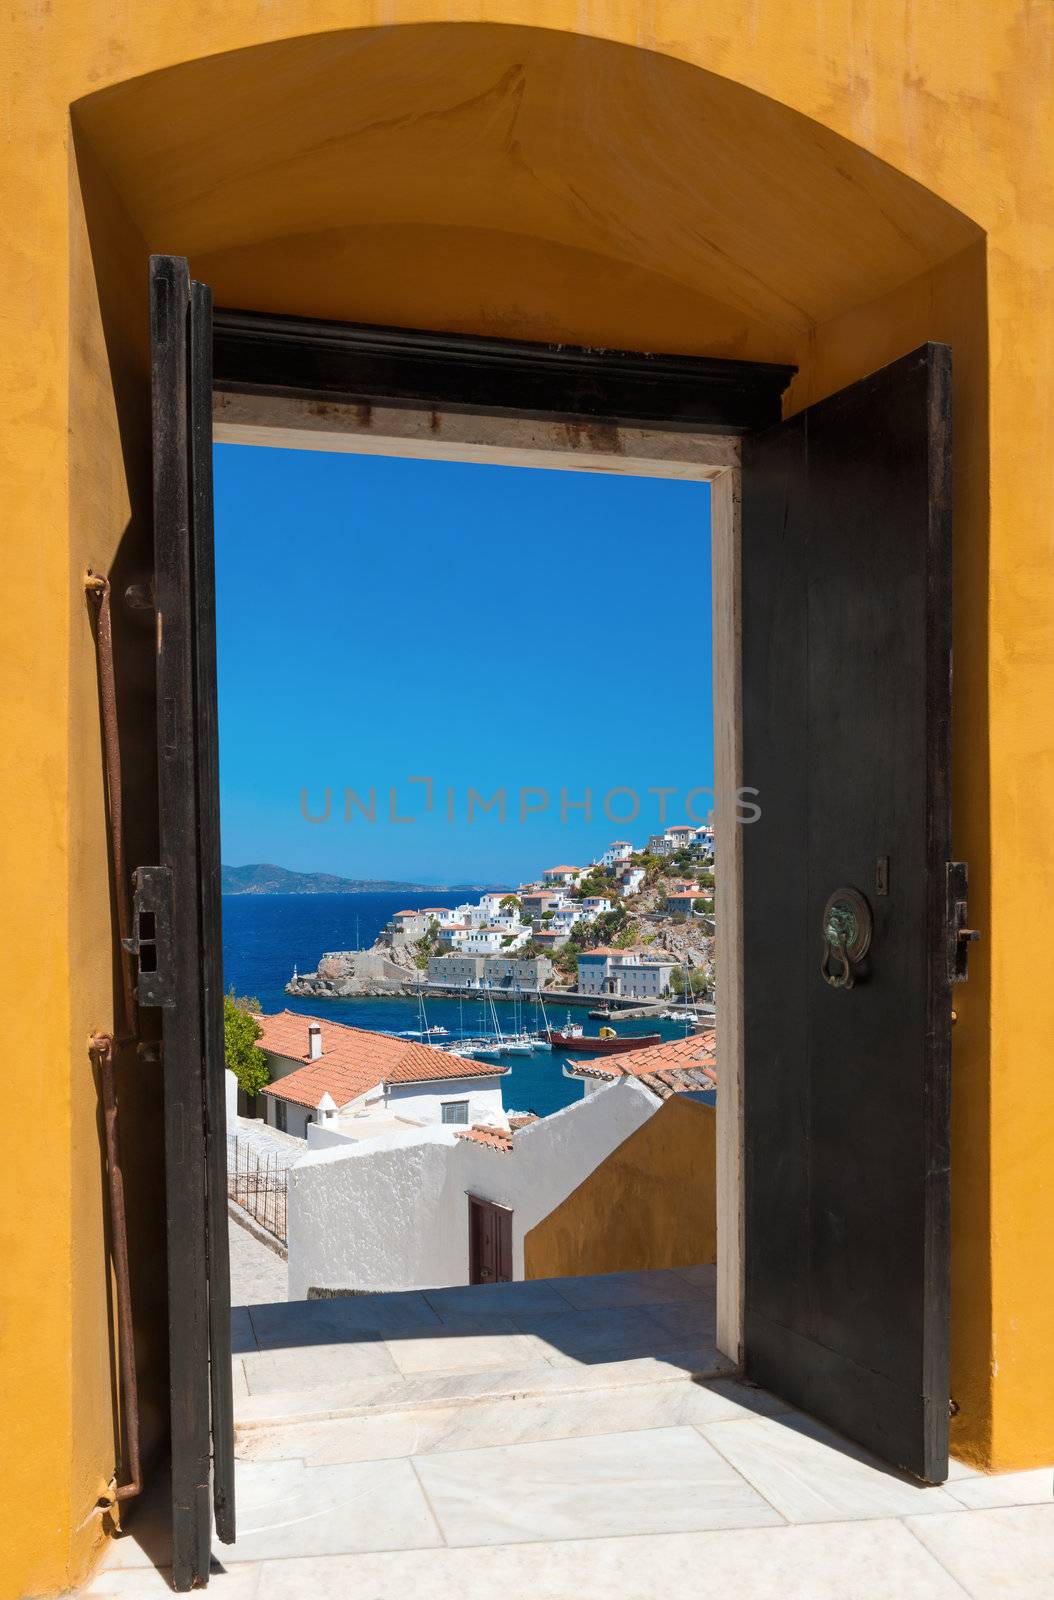 The island of Hydra, Greece, through an open door by akarelias